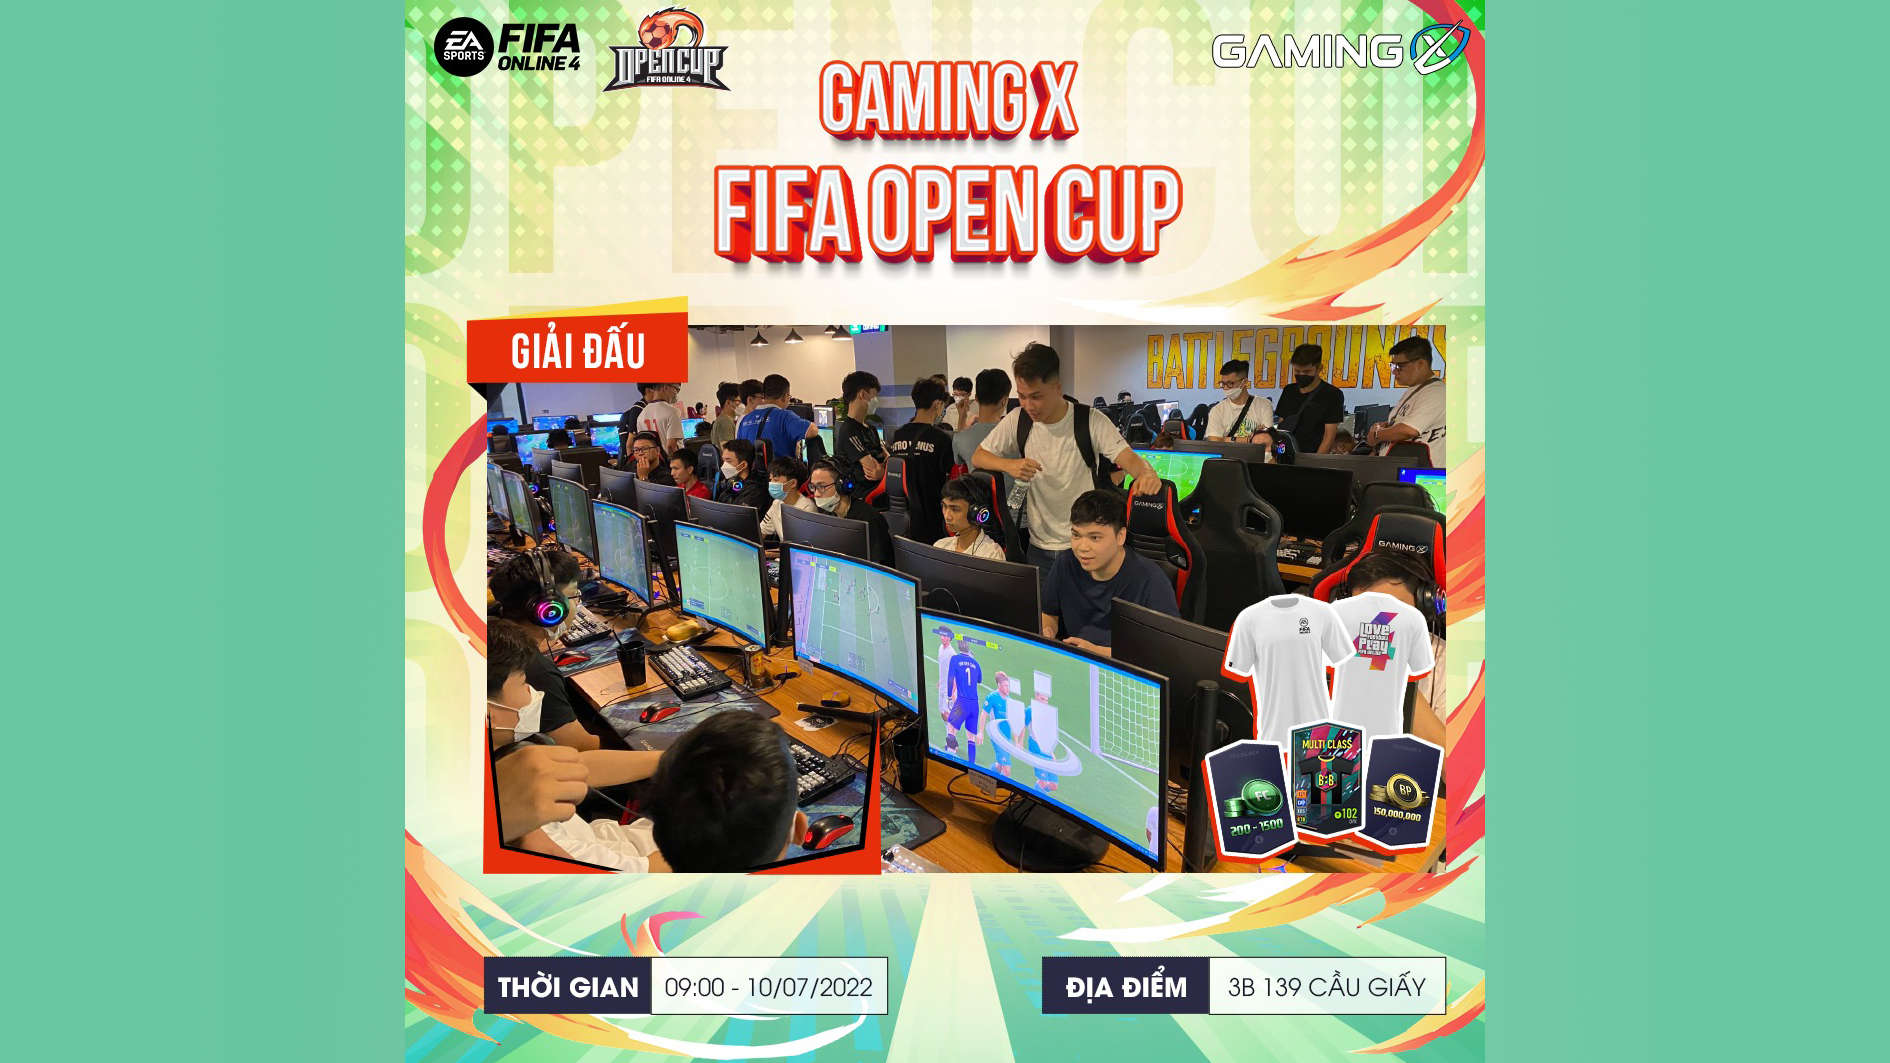 Mở Đăng Ký Giải Đấu Gaming X Fifa Open Cup - Gaming X 139 Cầu Giấy